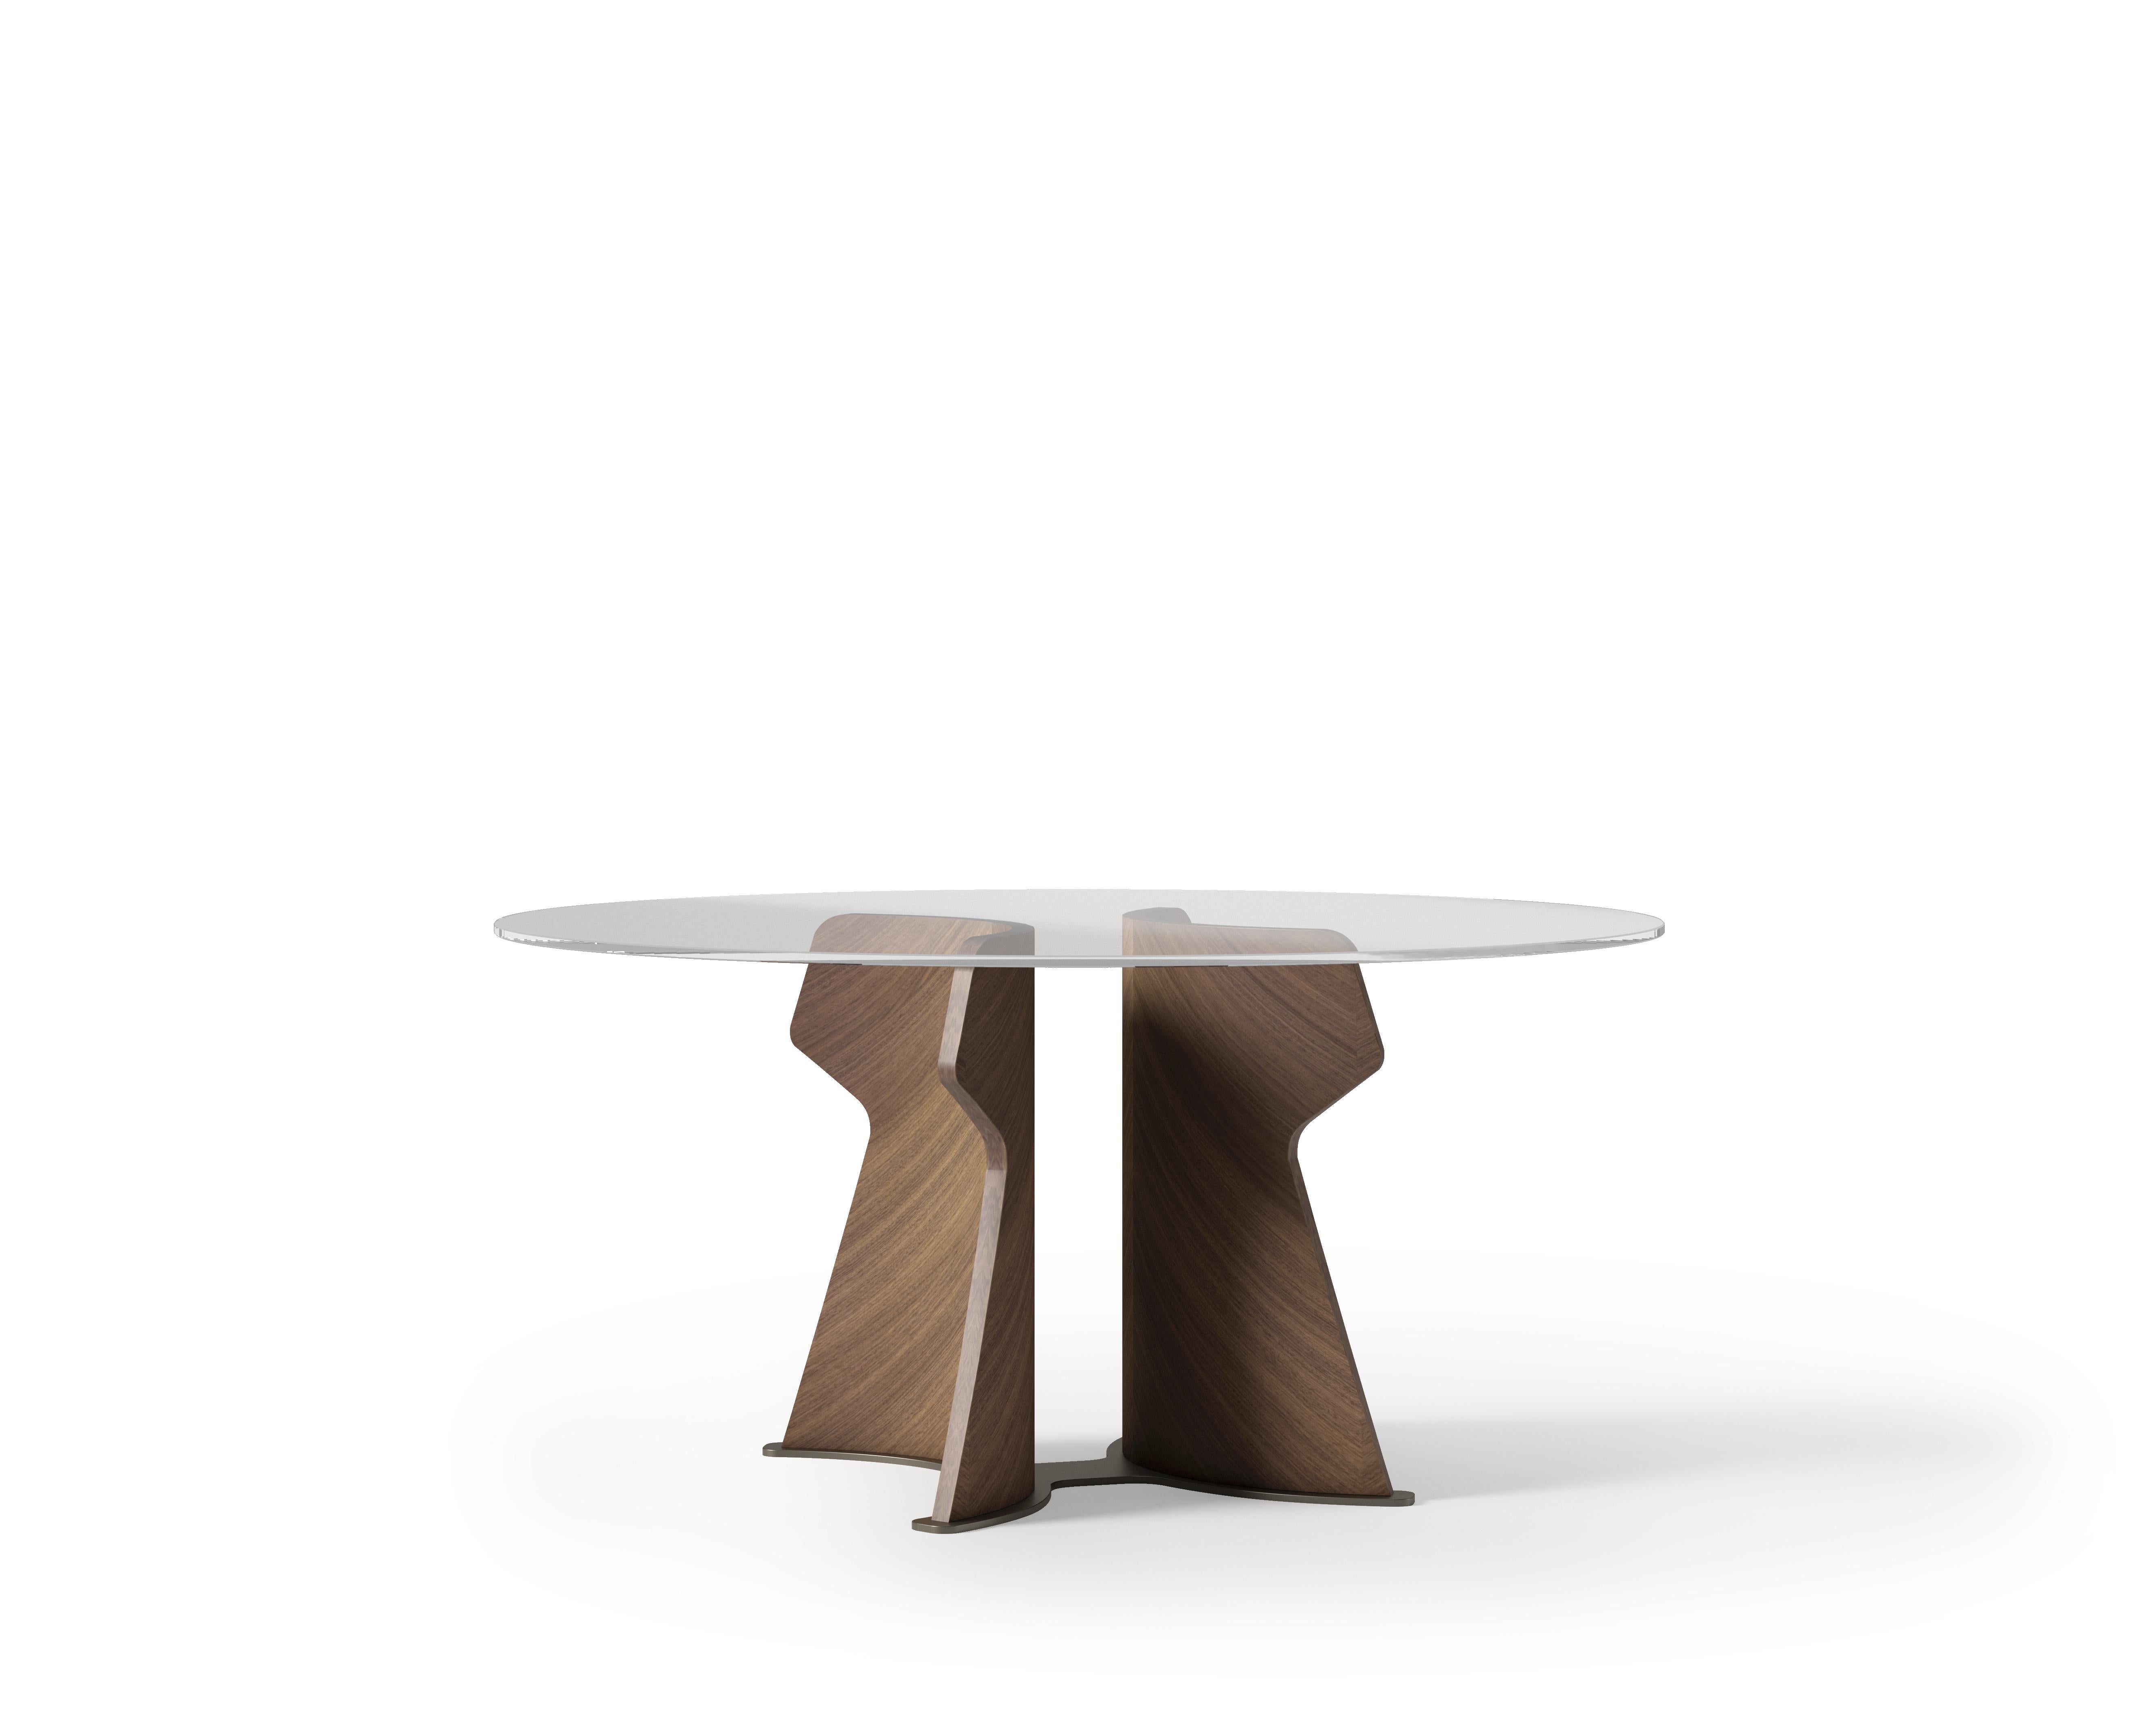 Table inspirée par les caractéristiques décisives de l'architecture de l'île de Pâques. Il est caractérisé par une base sculpturale recouverte de bois précieux, disponible en Tay clair, Tay foncé et en Noyer Canaletto. Le plateau est rond ou ovale